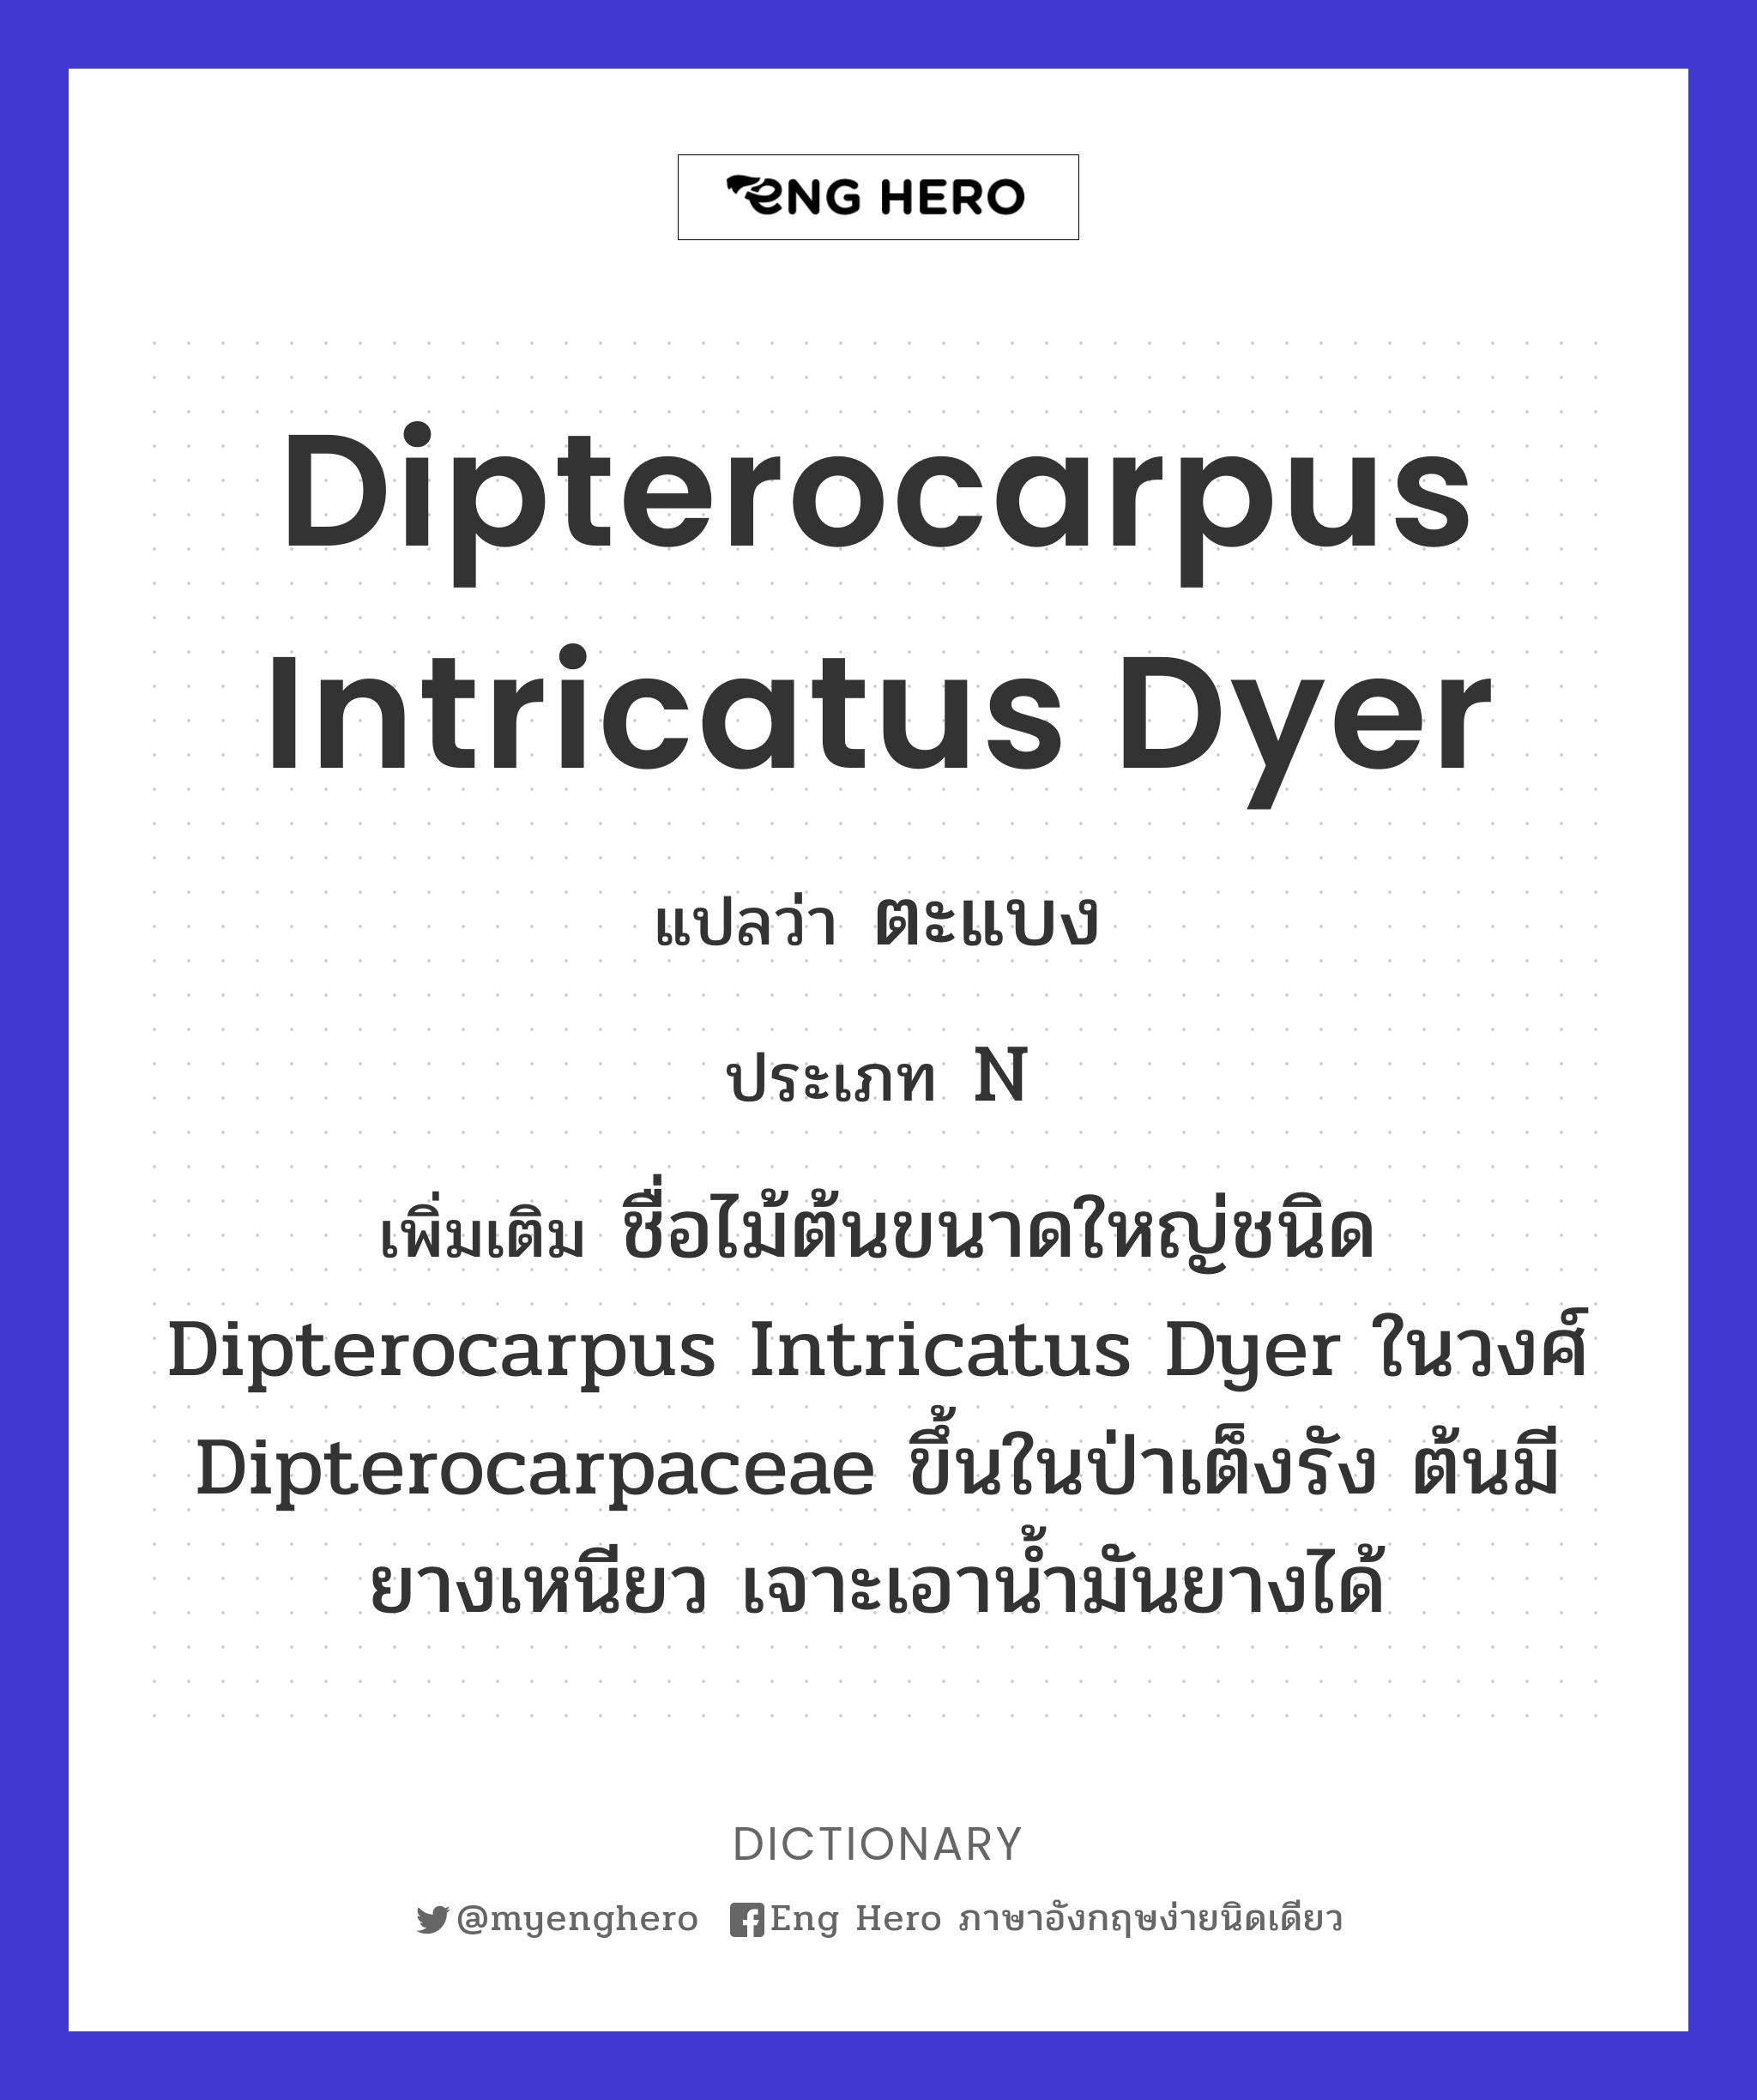 Dipterocarpus intricatus Dyer